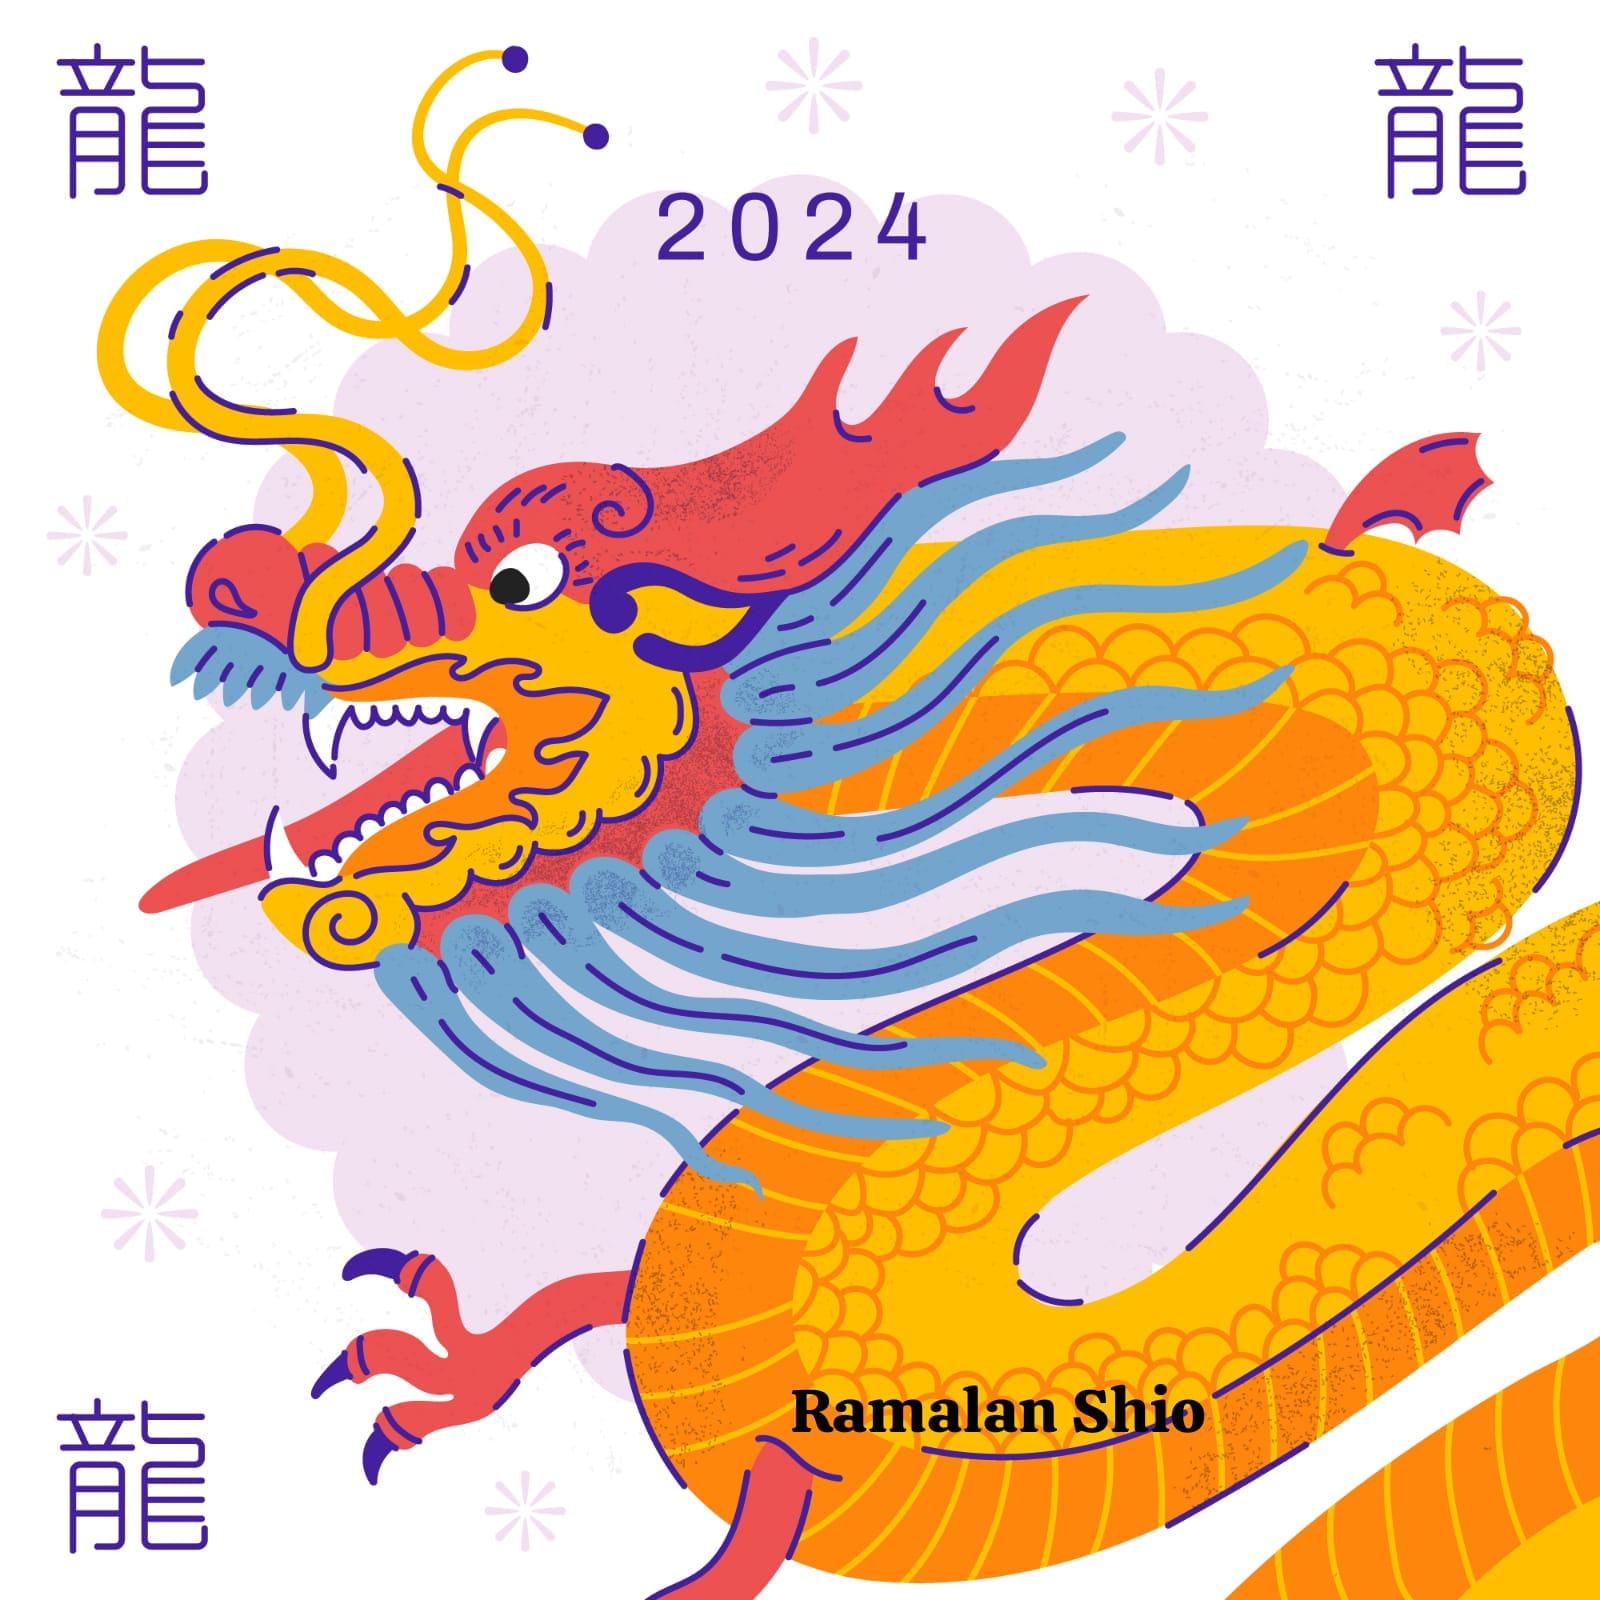 Ramalan Shio Naga, Shio Kelinci, Shio Ular, Shio Macan, Shio Kuda Hari Ini 9 Januari 2024